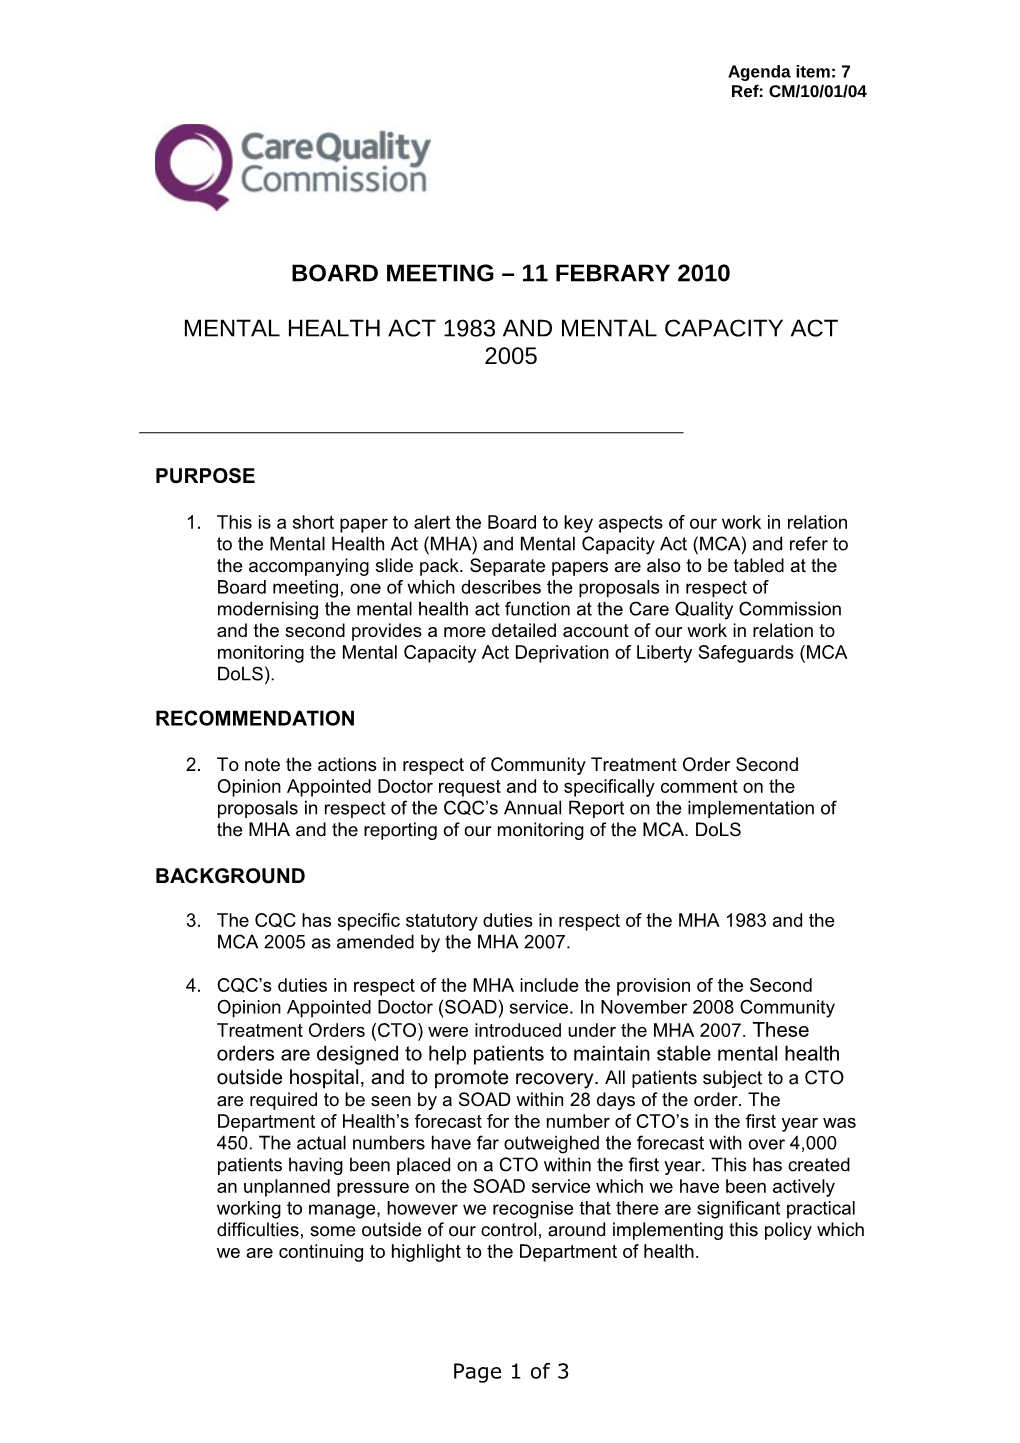 Mental Health Act 1983 and Mental Capacity Act 2005